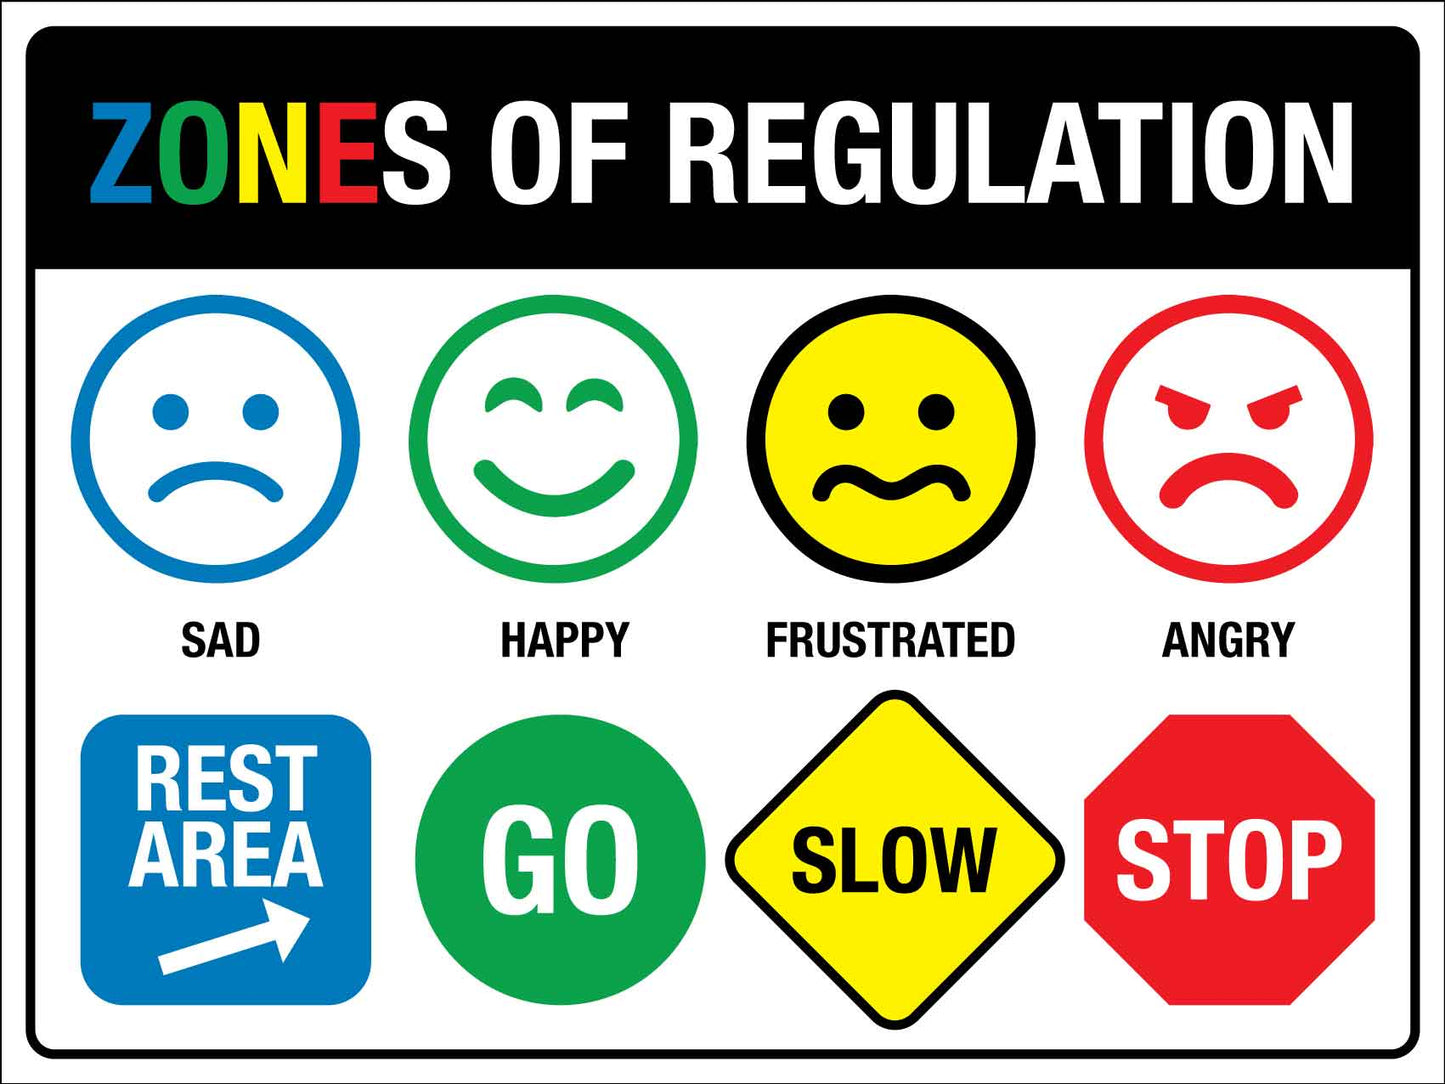 Zones Of Regulation Sign